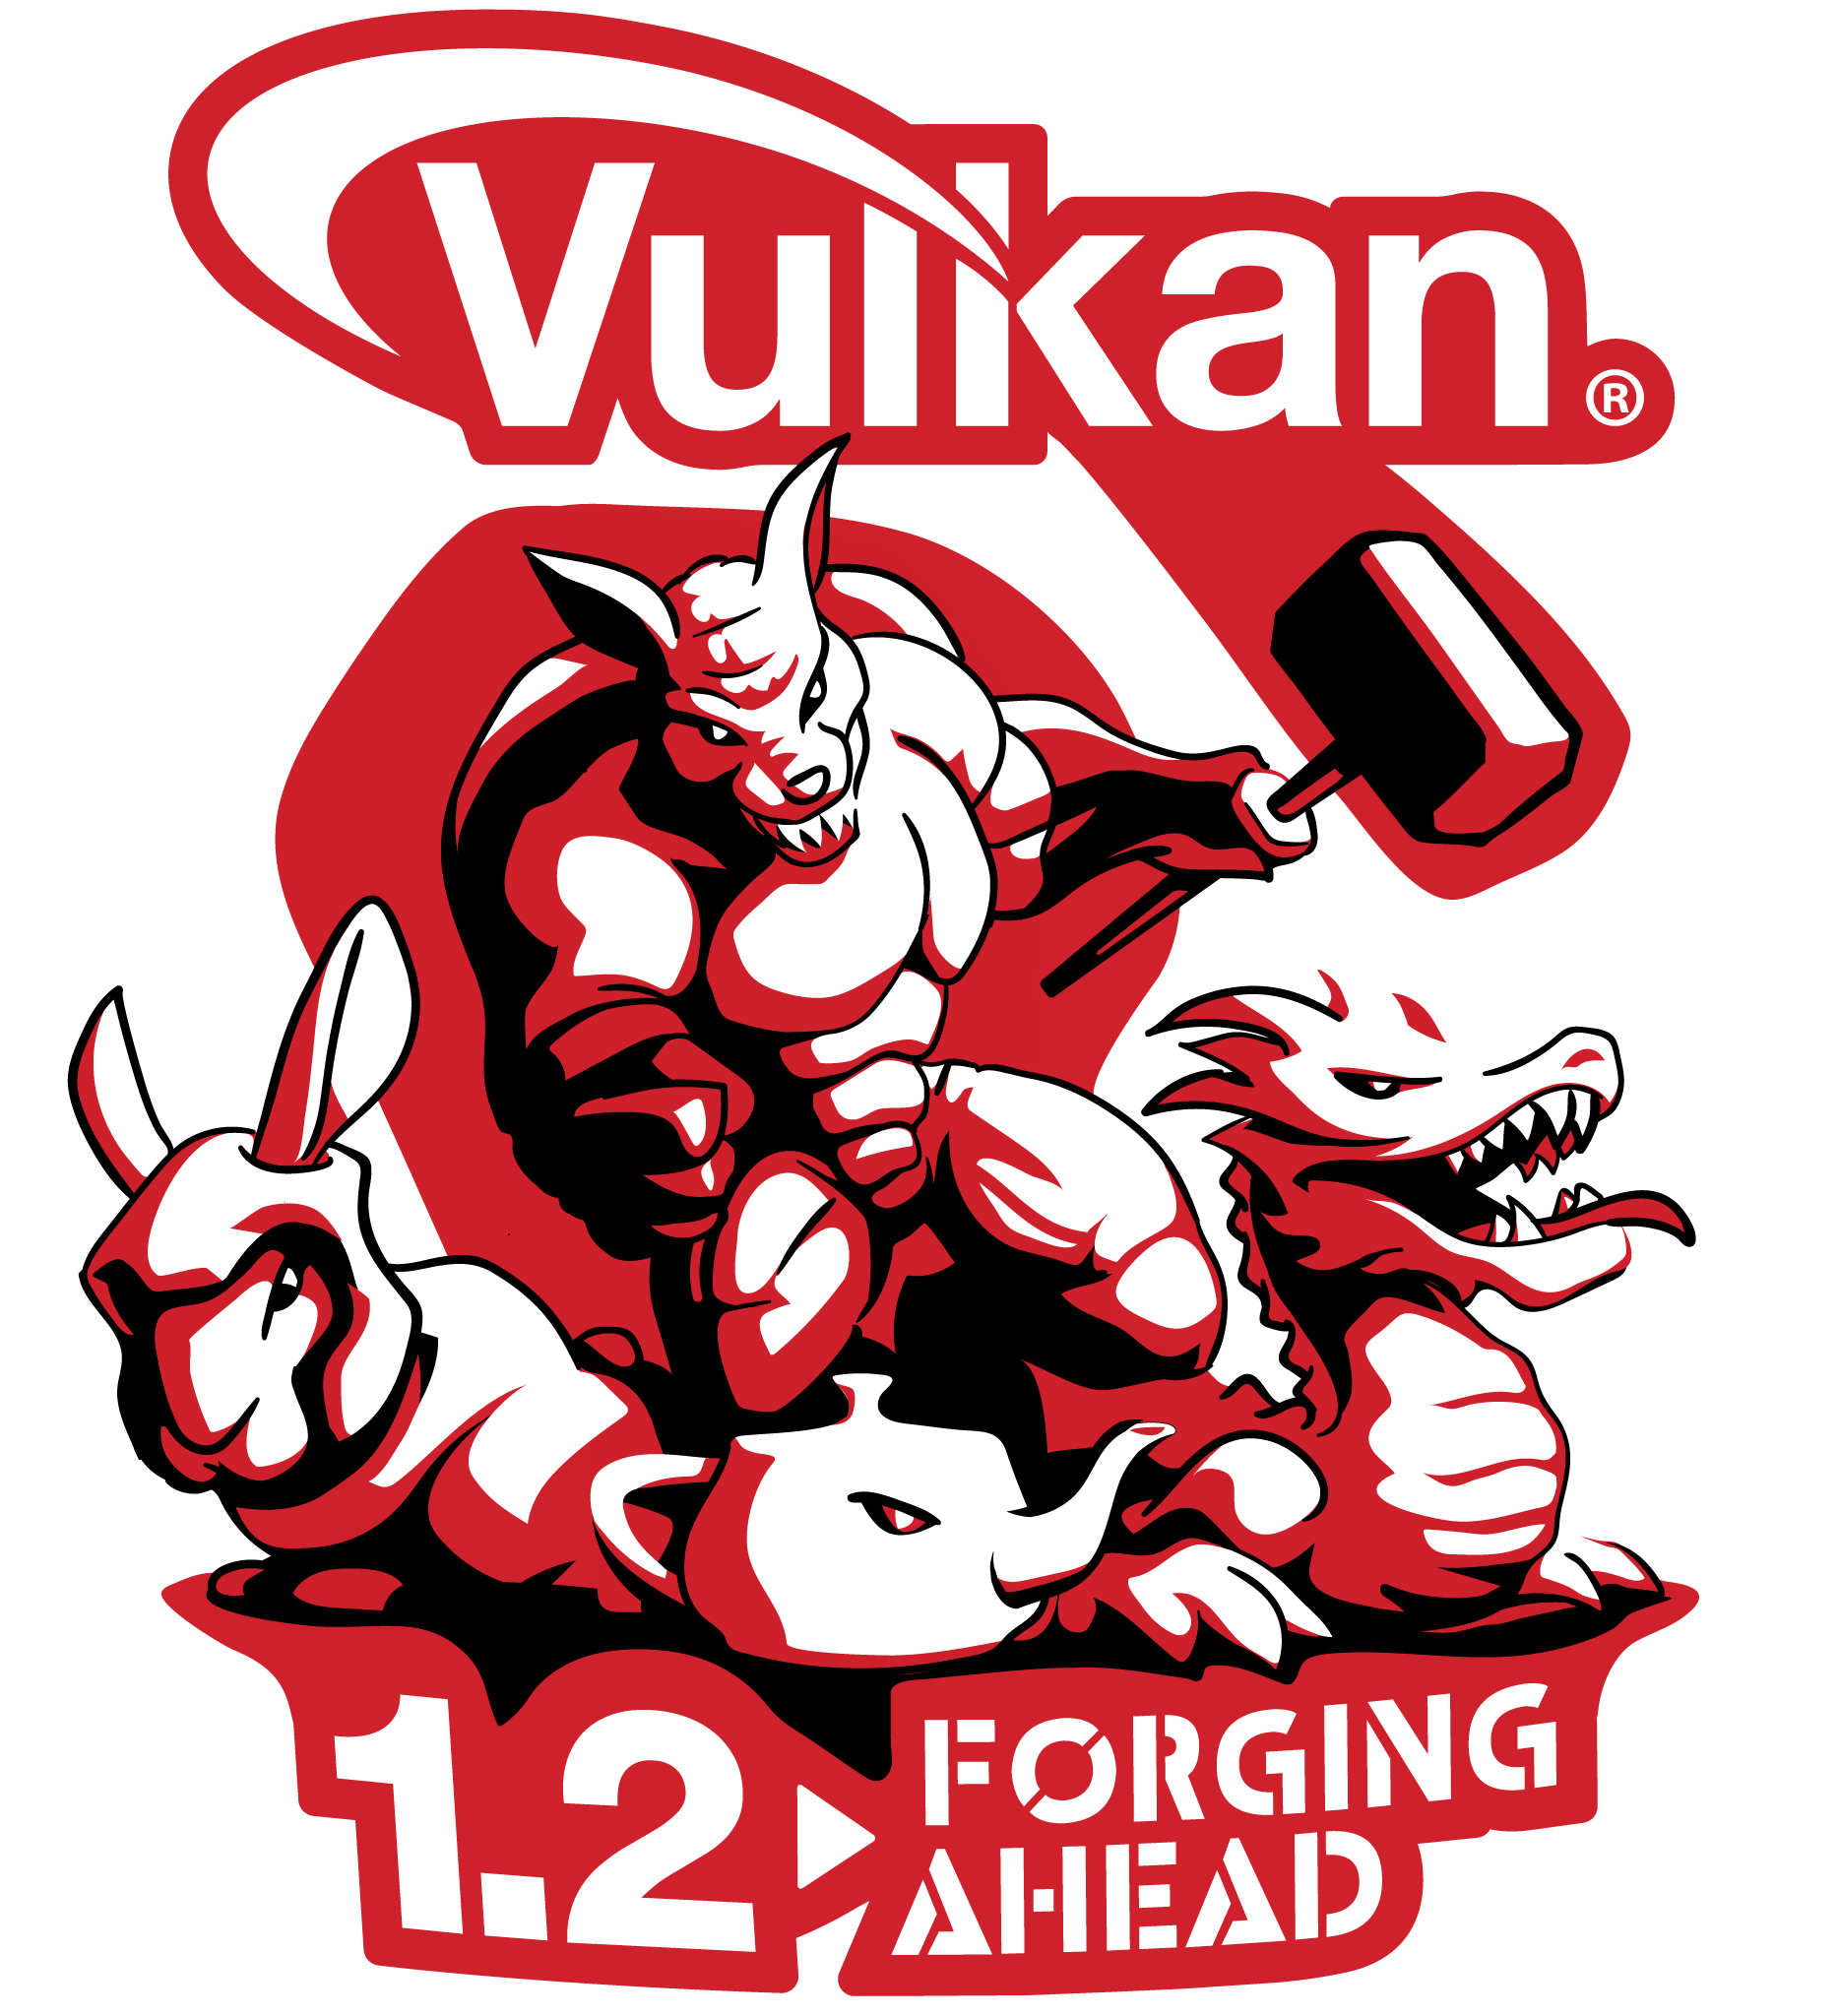 Khronos Group Releases Vulkan 1.2